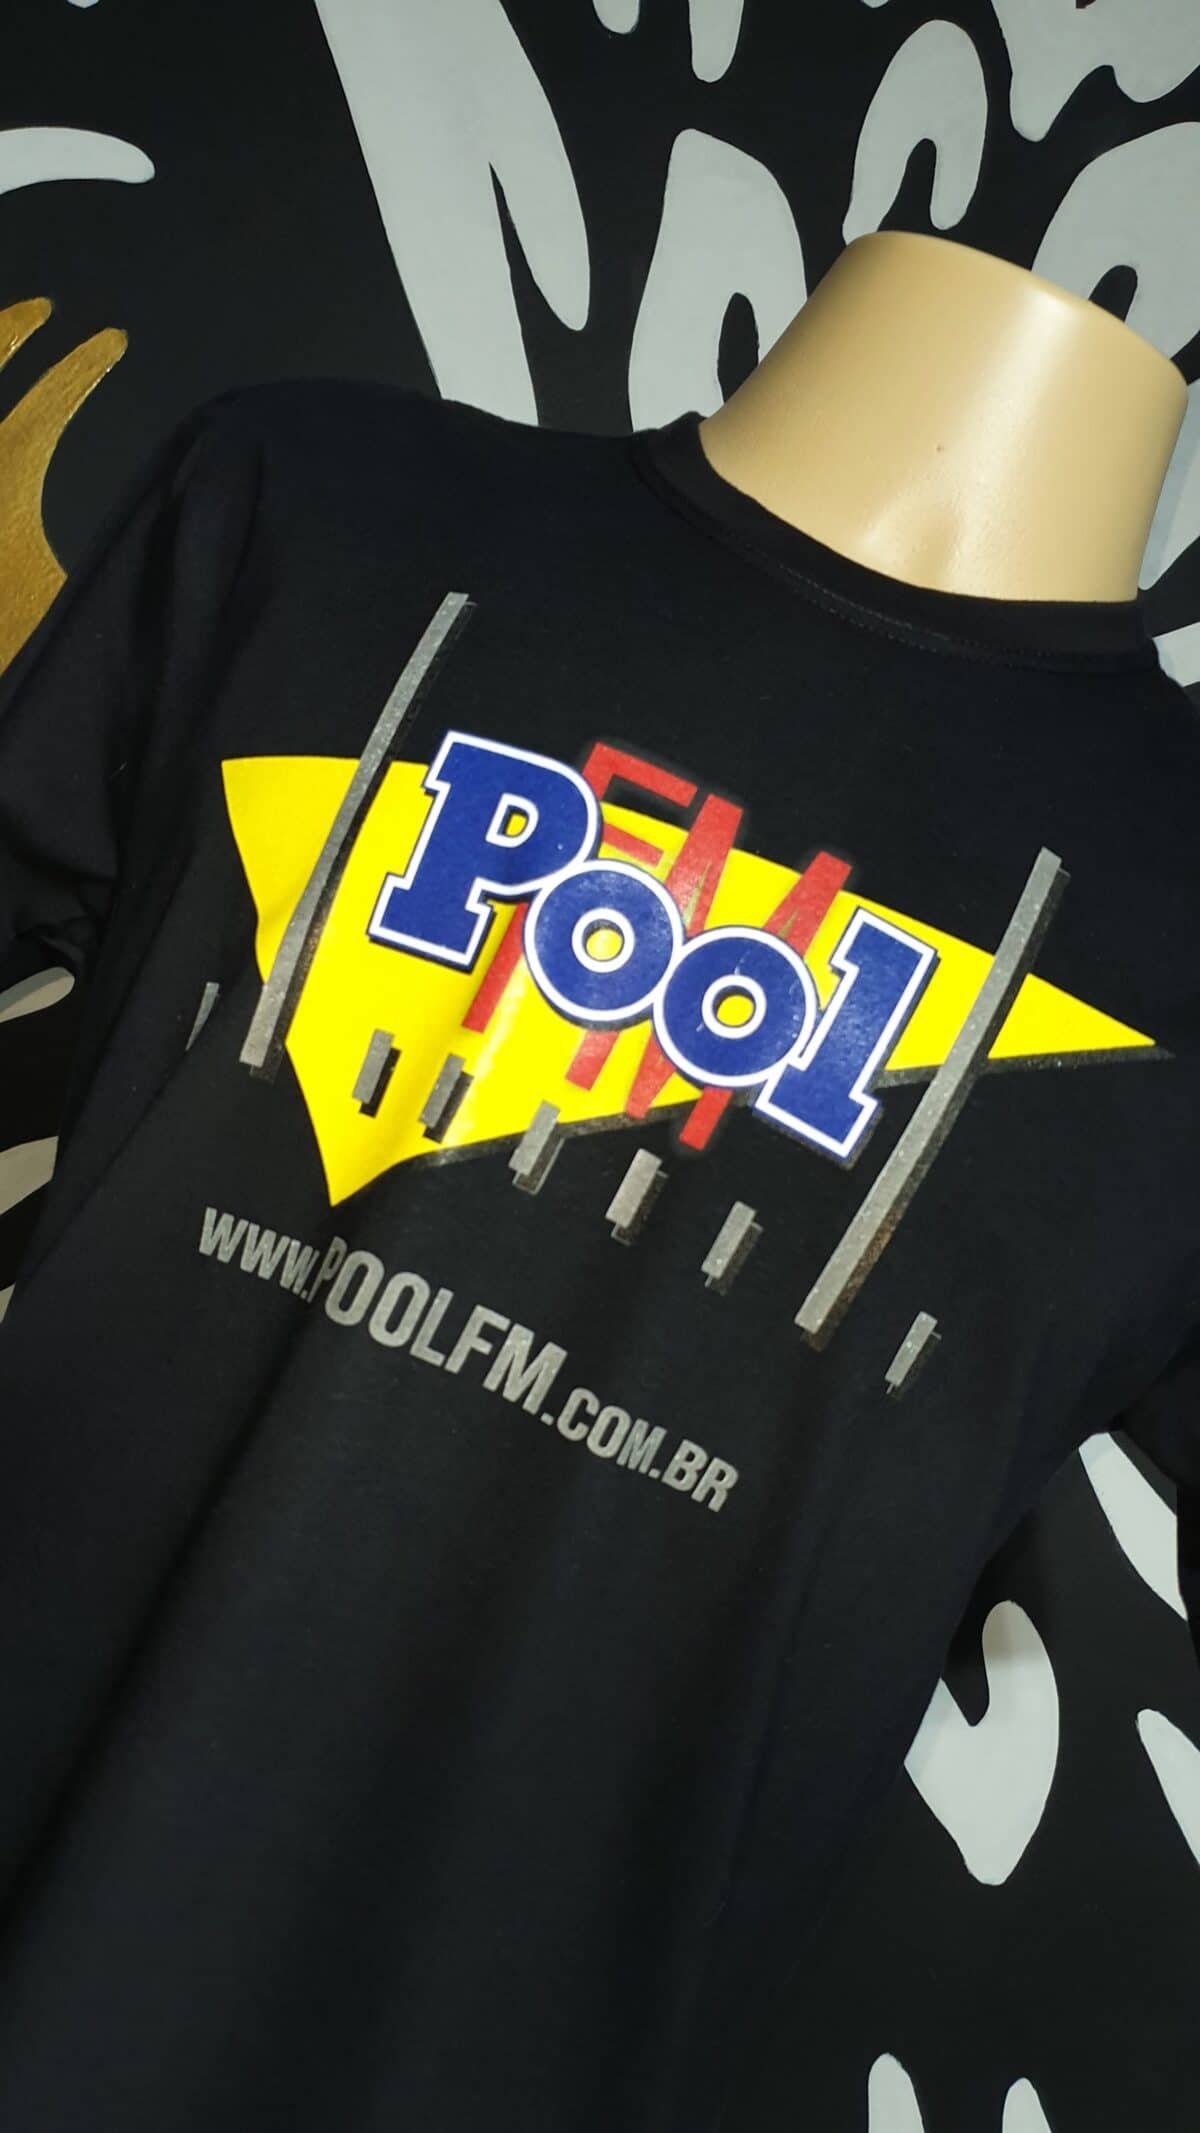 Camiseta POOL FM Vintage by Bordado & Cia - @bordado.cia; @poolfm